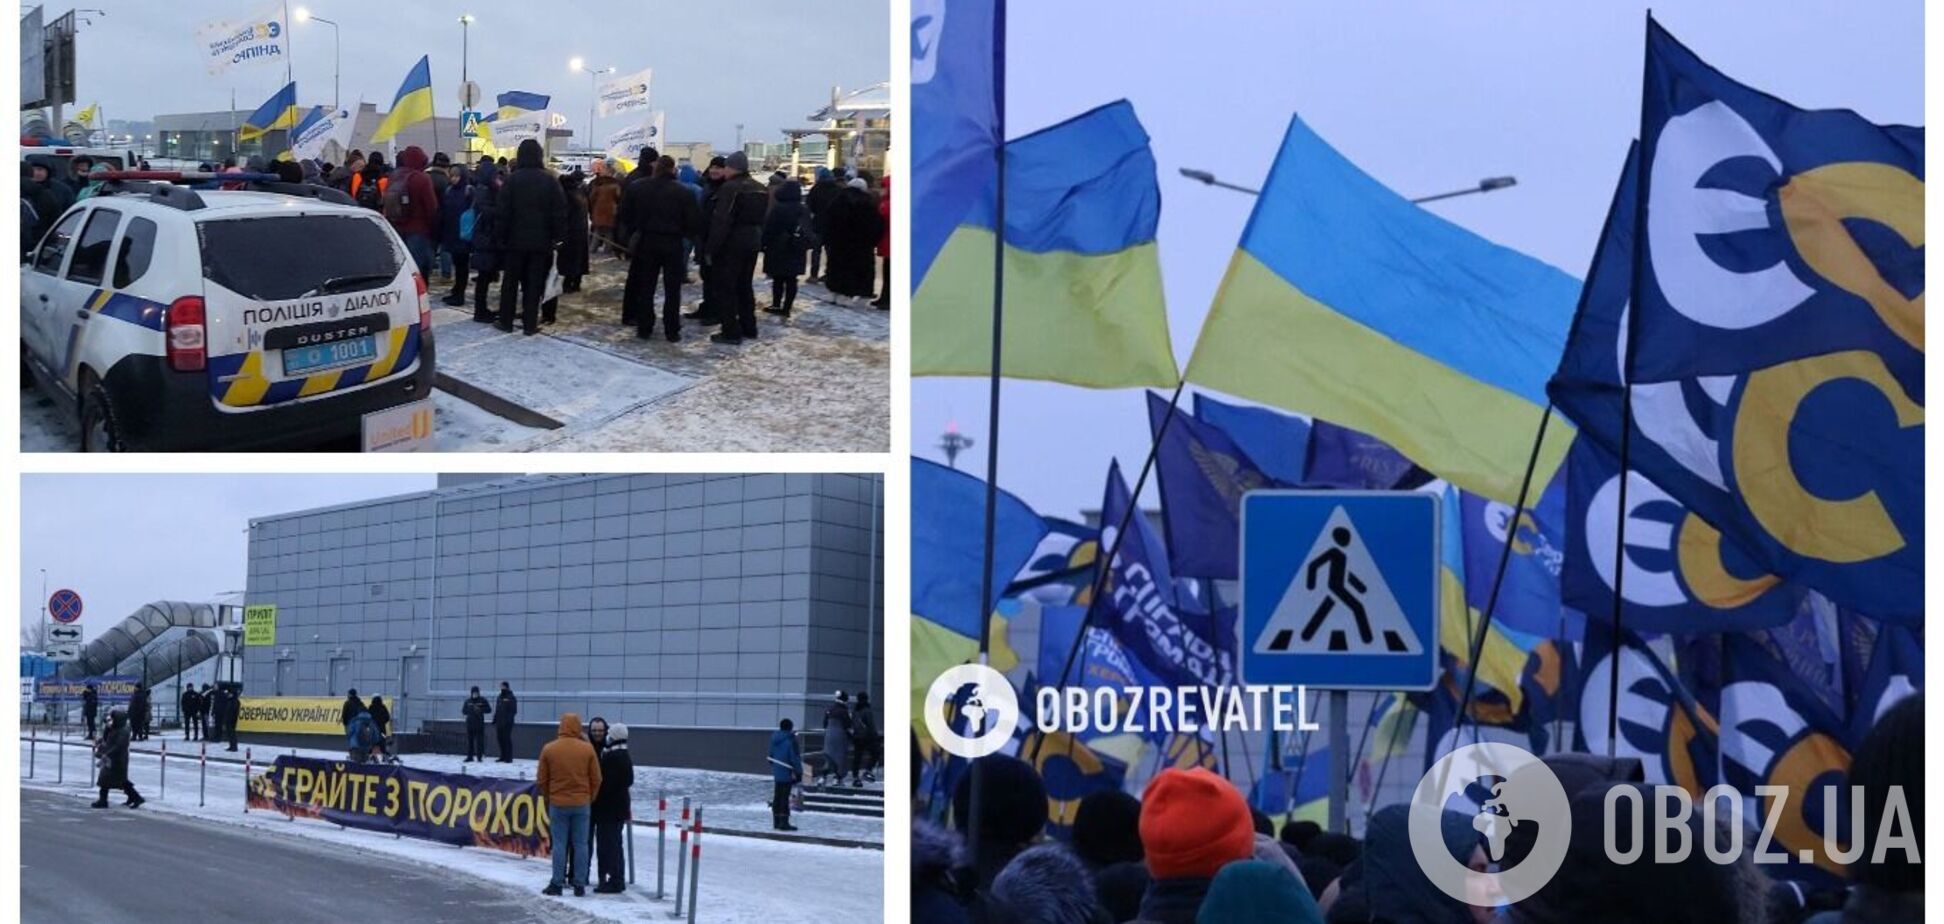 Люди прийшли з прапорами та плакатами: як зустрічають Порошенка в Києві. Фото і відео